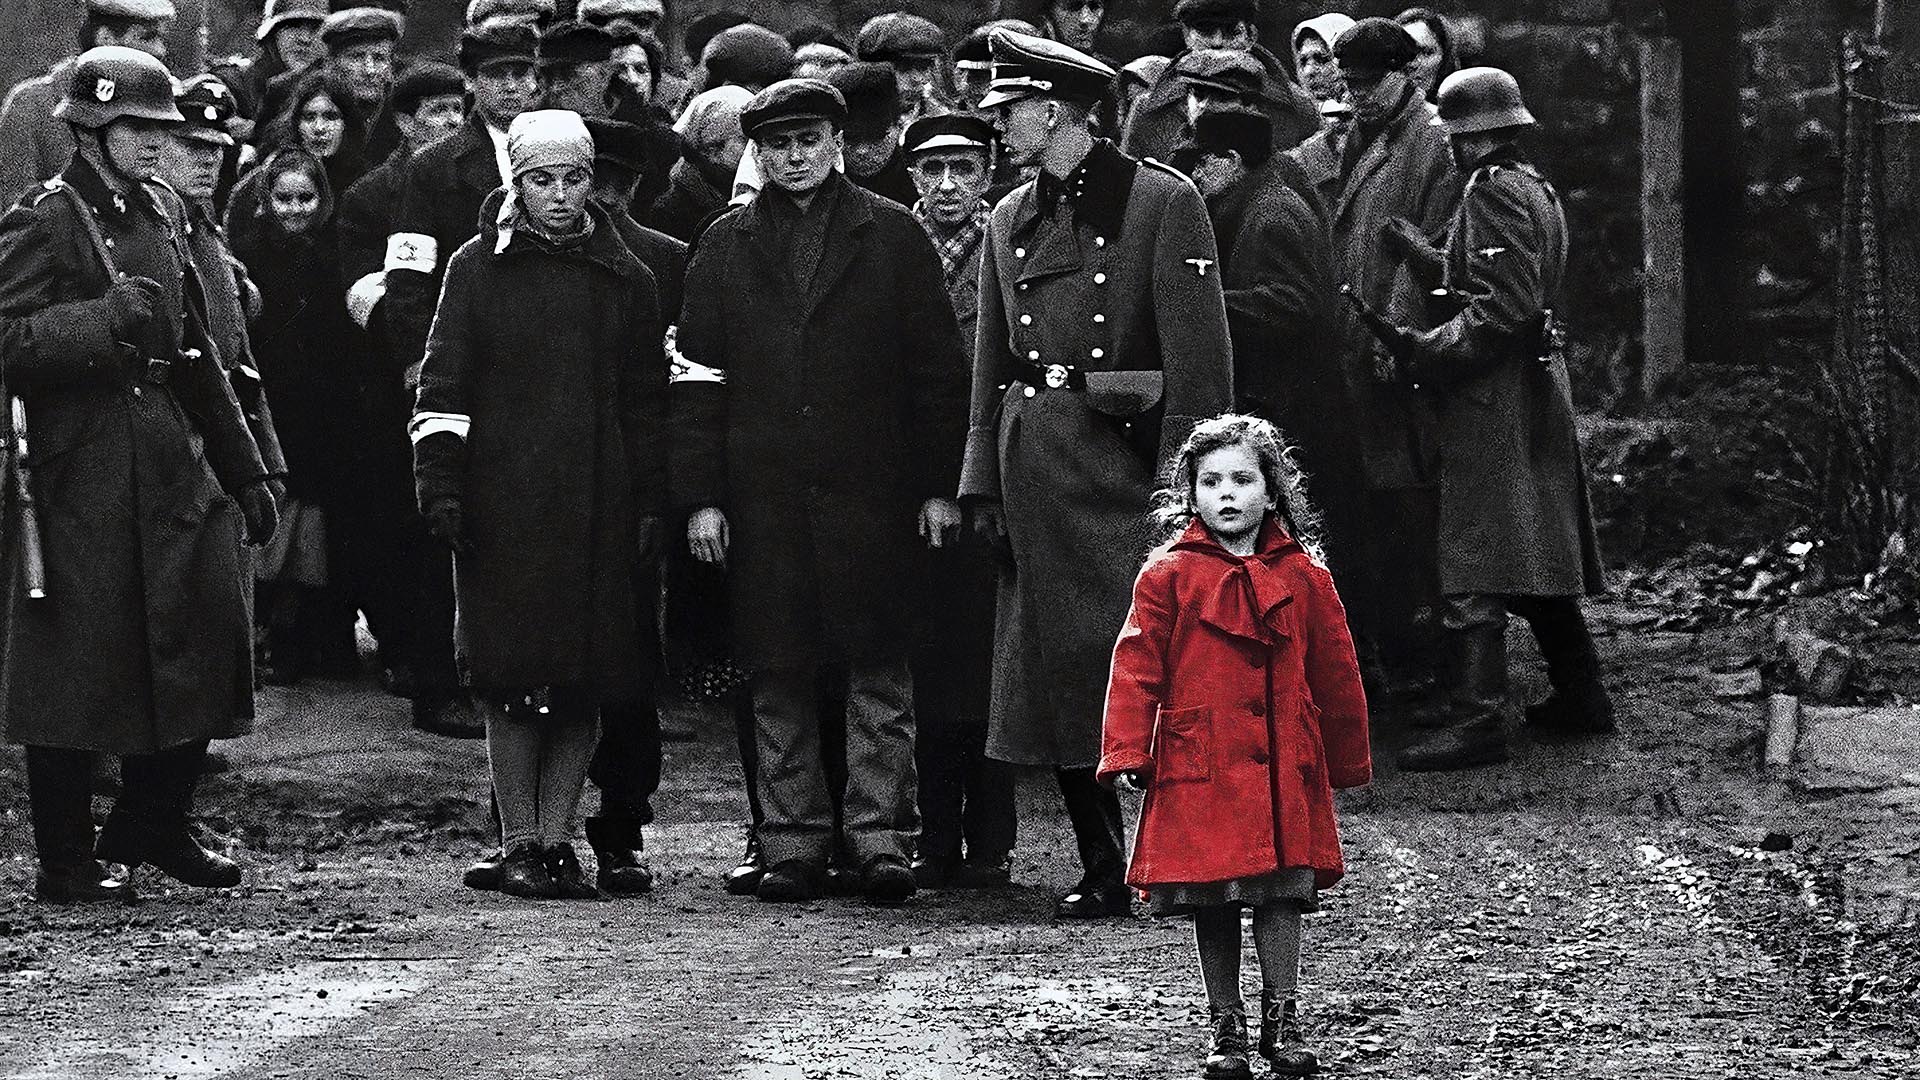 ‘Zona de interés’ ha seducido por tratar de manera tan banal el terror del nazismo en Alemania y Polonia. Spielberg se ha quedado fascinado por ella y la considera la mejor película sobre el holocausto desde su ‘Lista de Schindler’. Palabras mayores.